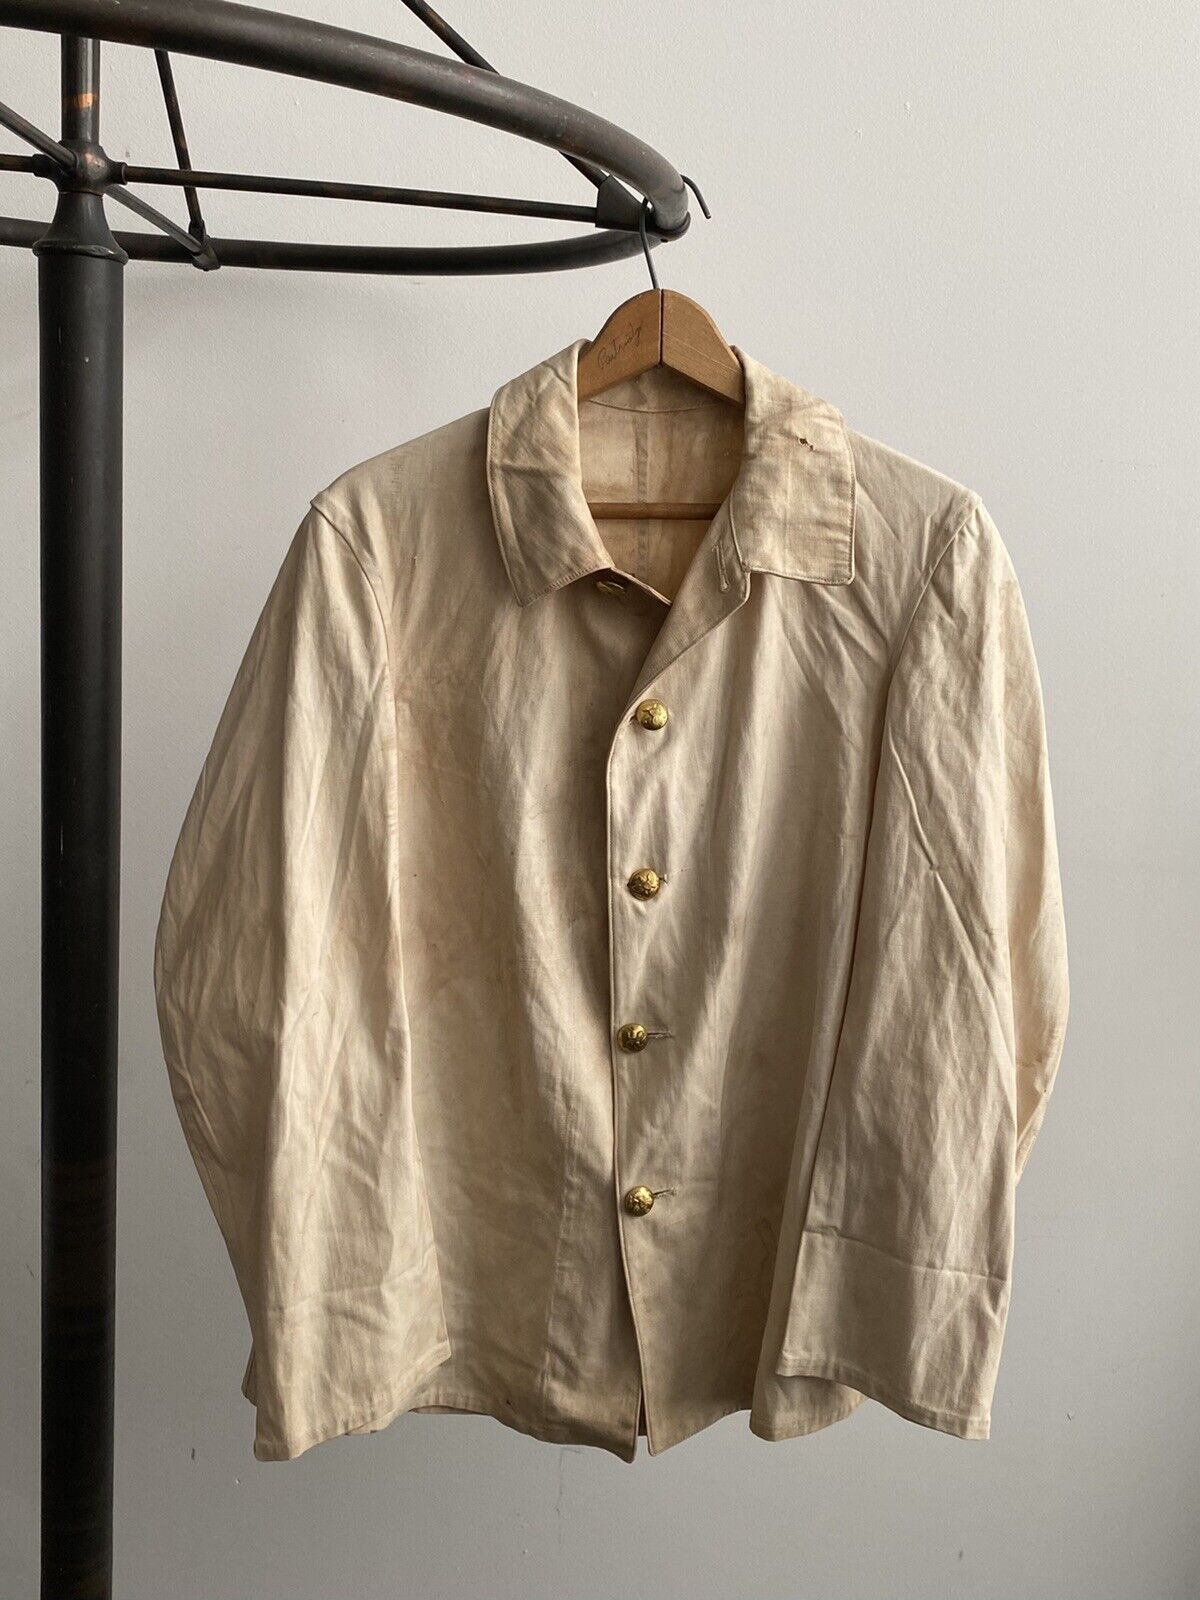 Vintage Spanam 1890s US Military White Duck Jacket Change Button Workwear Denim